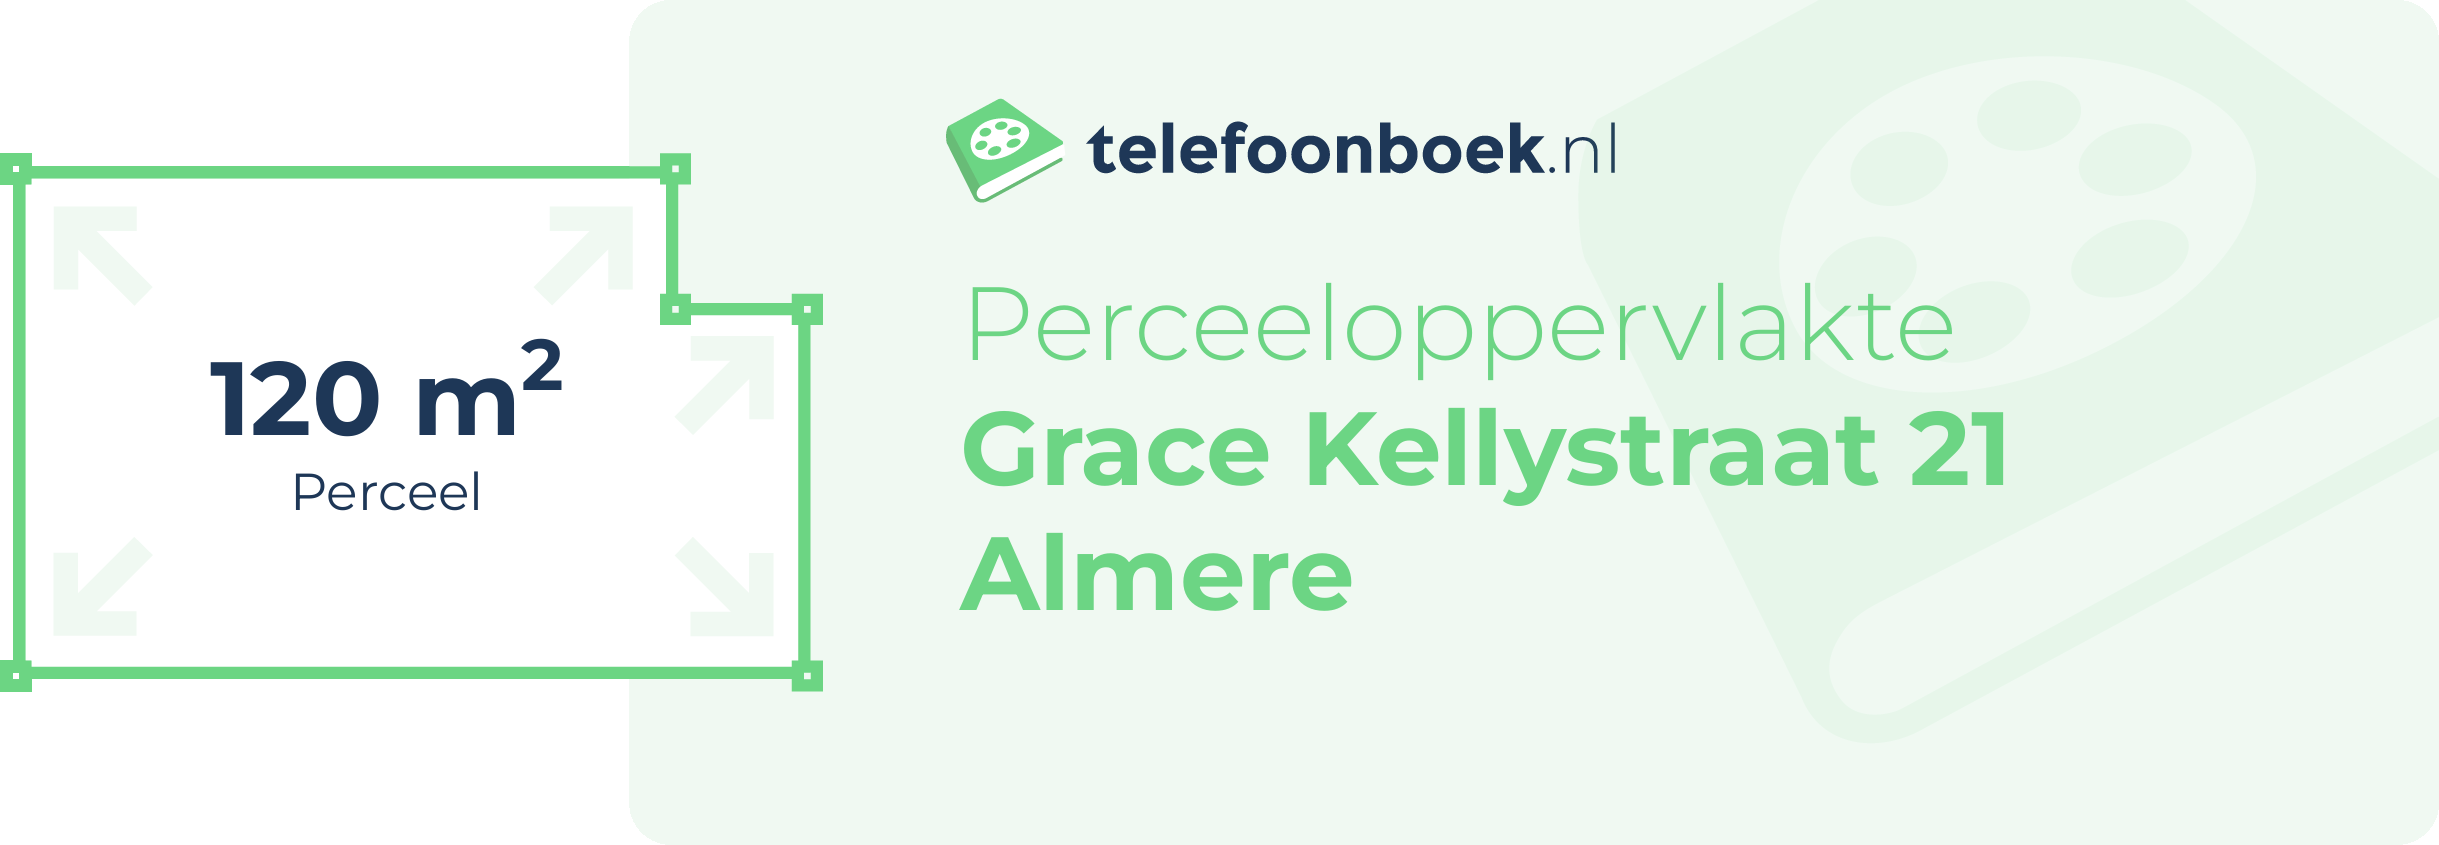 Perceeloppervlakte Grace Kellystraat 21 Almere